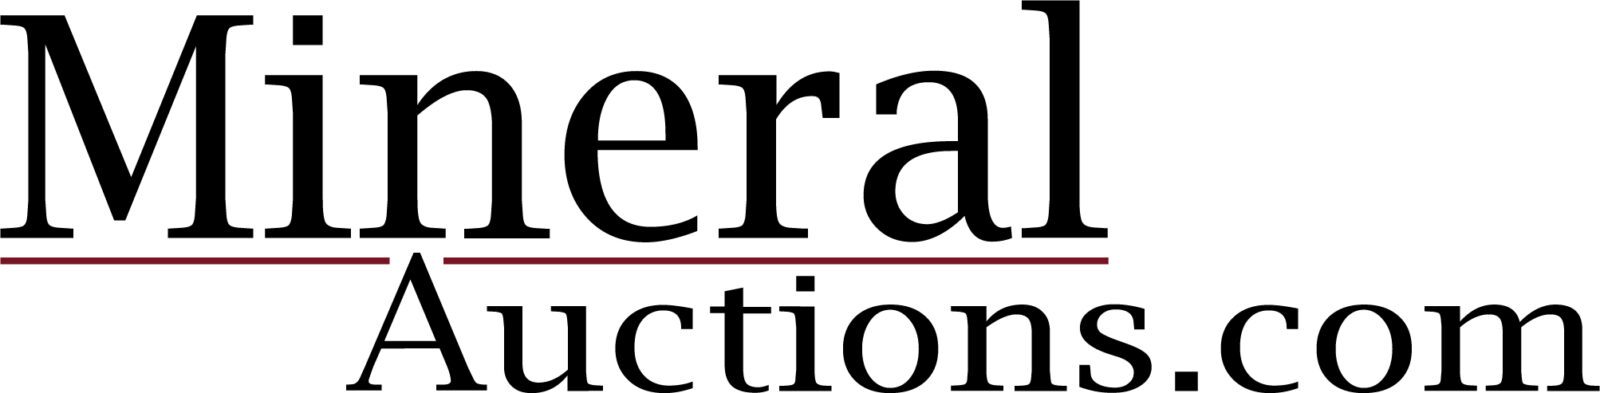 MineralAuctions.com Logo